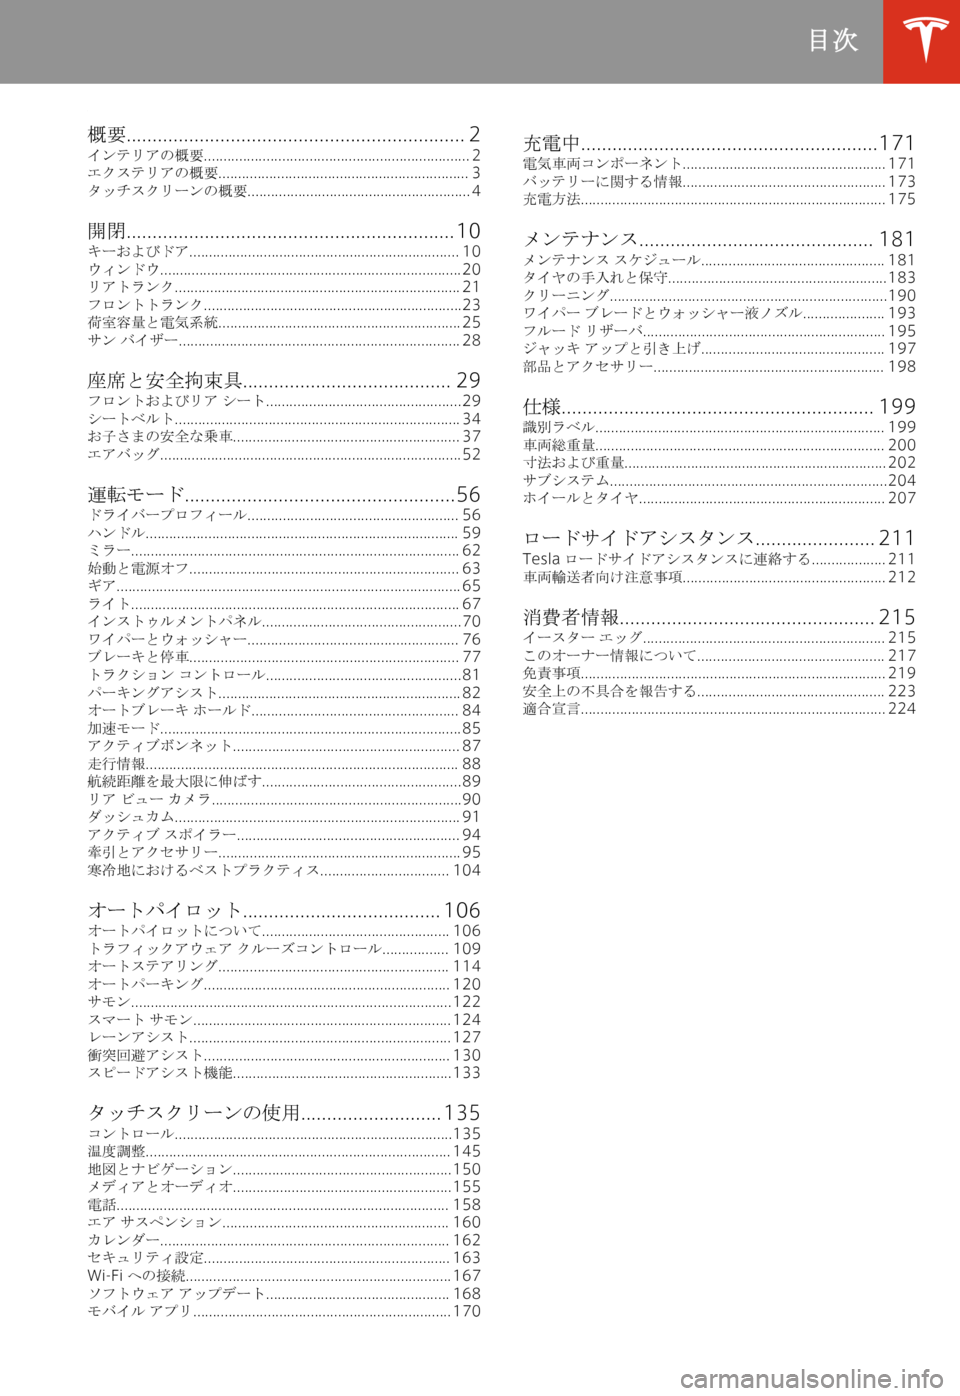 TESLA MODEL X 2020  取扱説明書 (in Japanese) % 
+0[ �.�.�.�.�.�.�.�.�.�.�.�.�.�.�.�.�.�.�.�.�.�.�.�.�.�.�.�.�.�.�.�.�.�.�.�.�.�.�.�.�.�.�.�.�.�.�.�.�.�.�.�.�.�.�.�.�.�.�.�.�.�.�.�.�. �2
